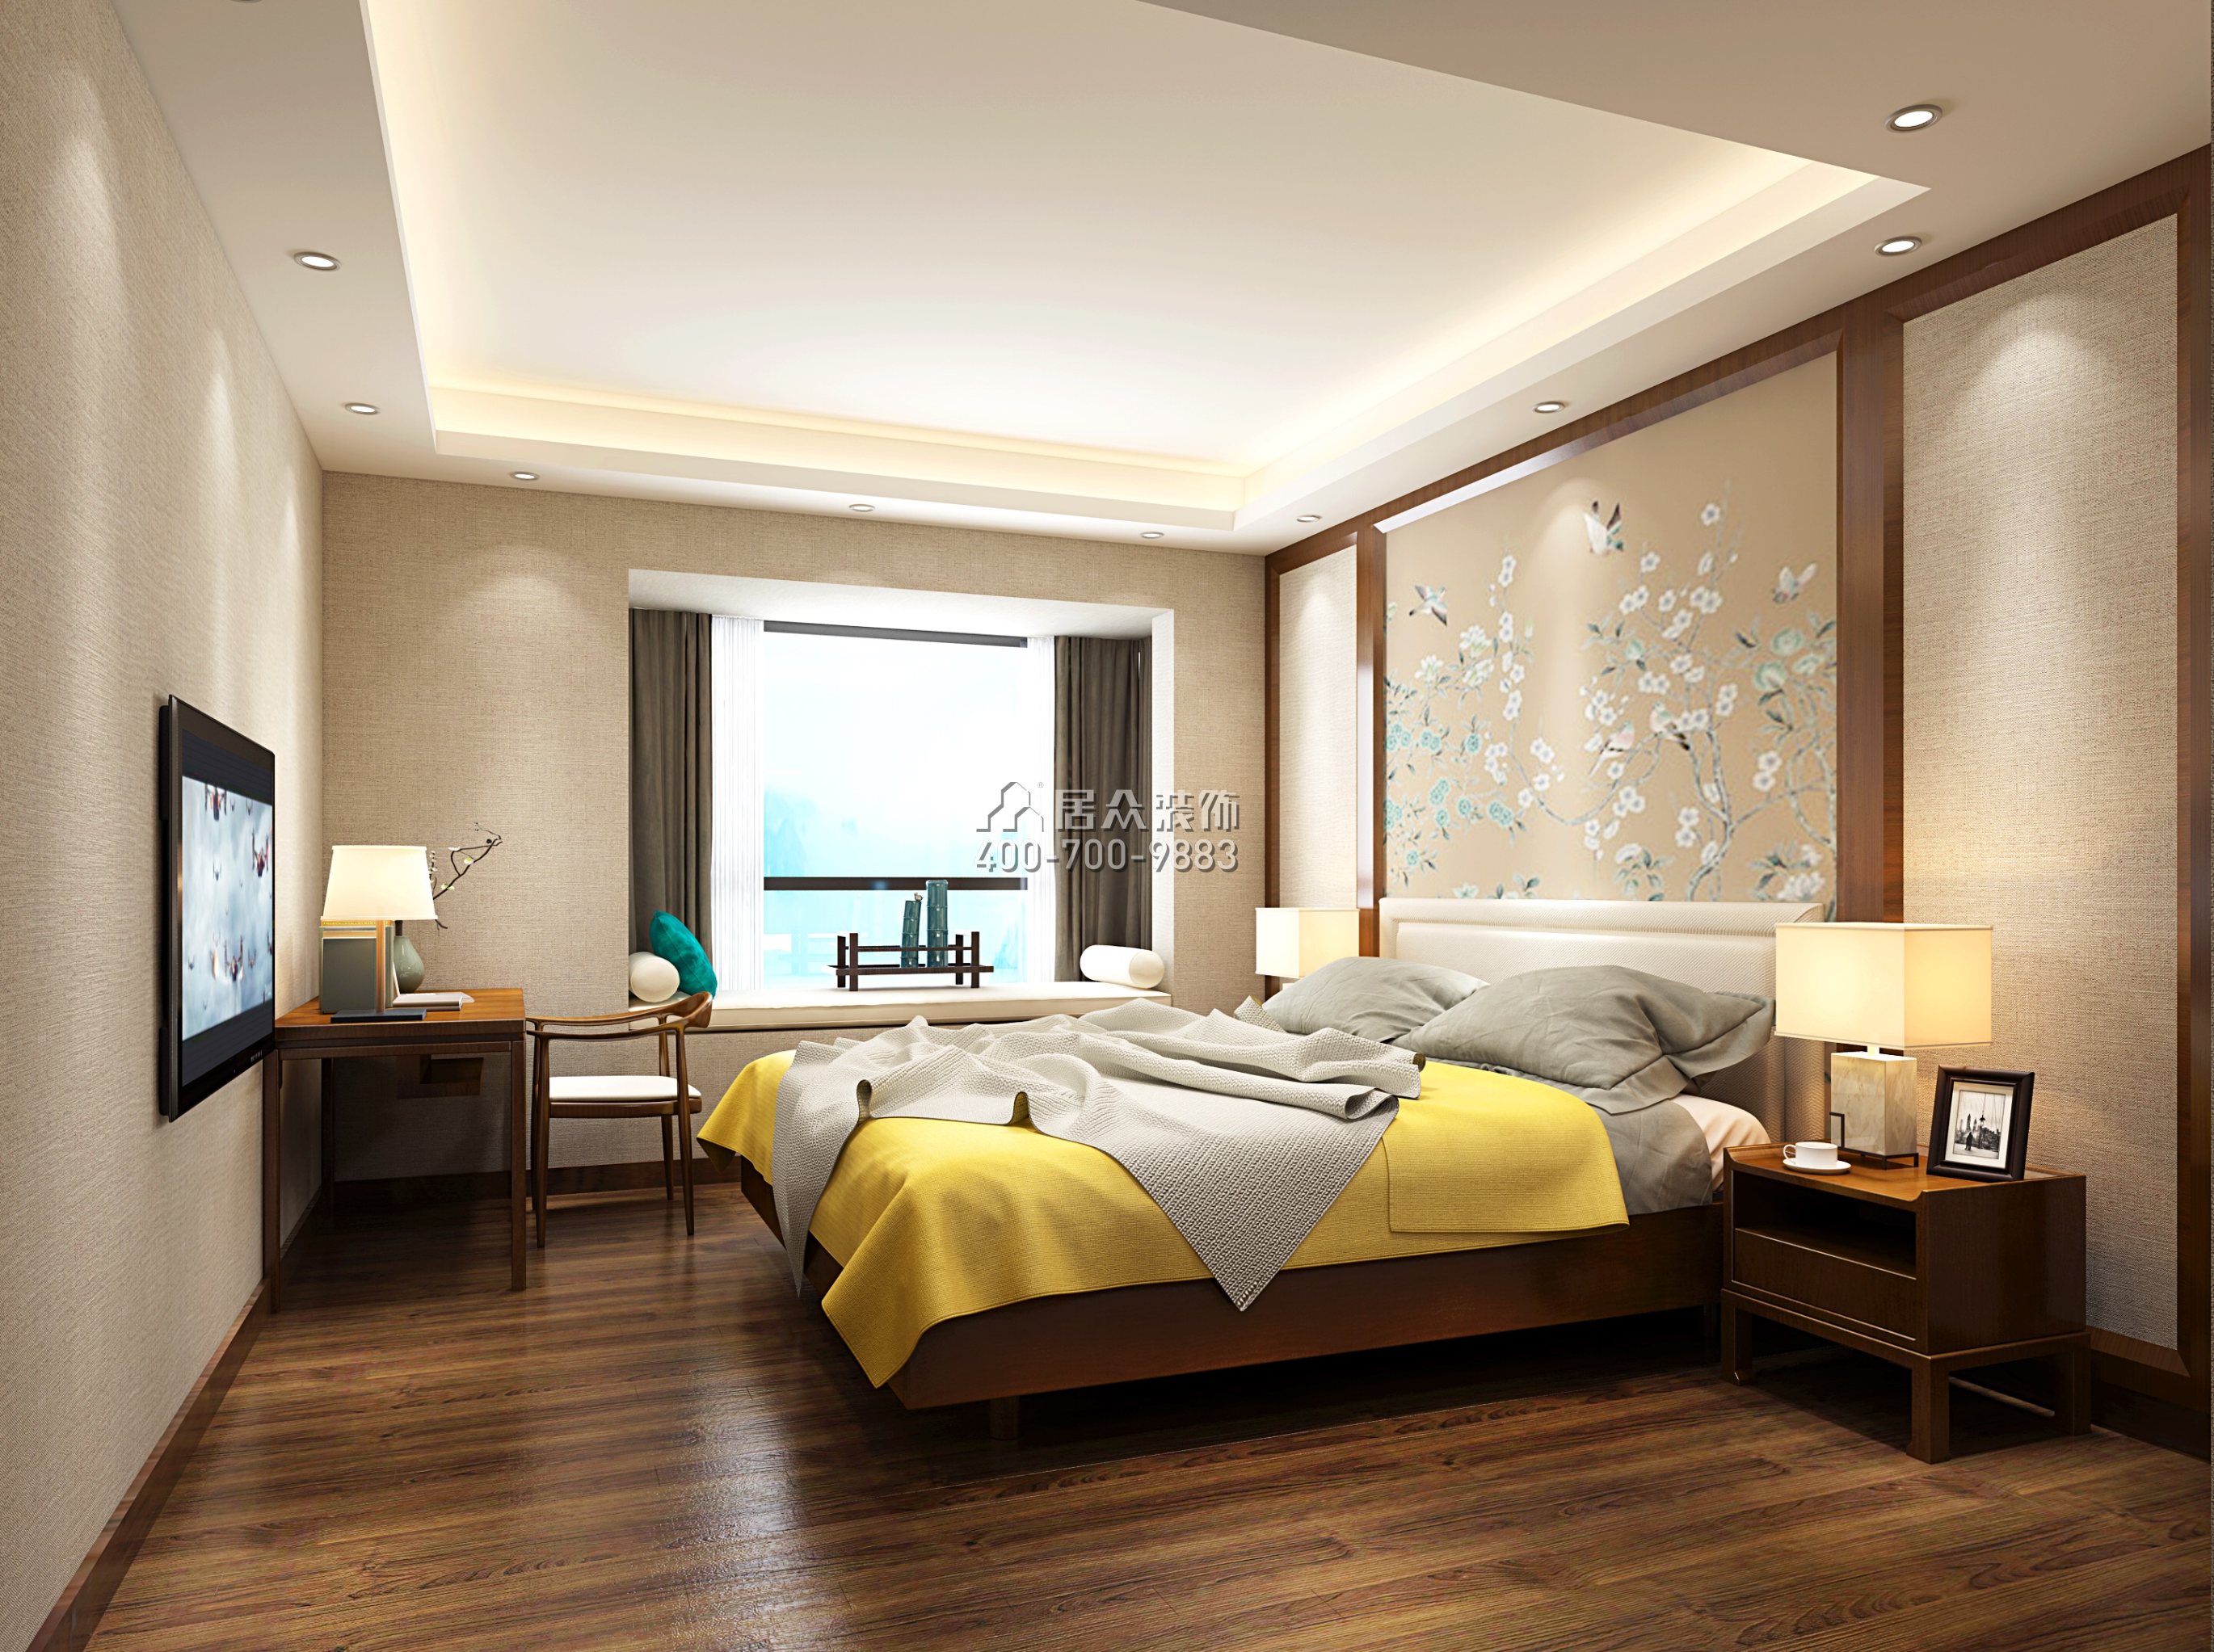 朝南凱旋匯223平方米中式風格平層戶型臥室裝修效果圖